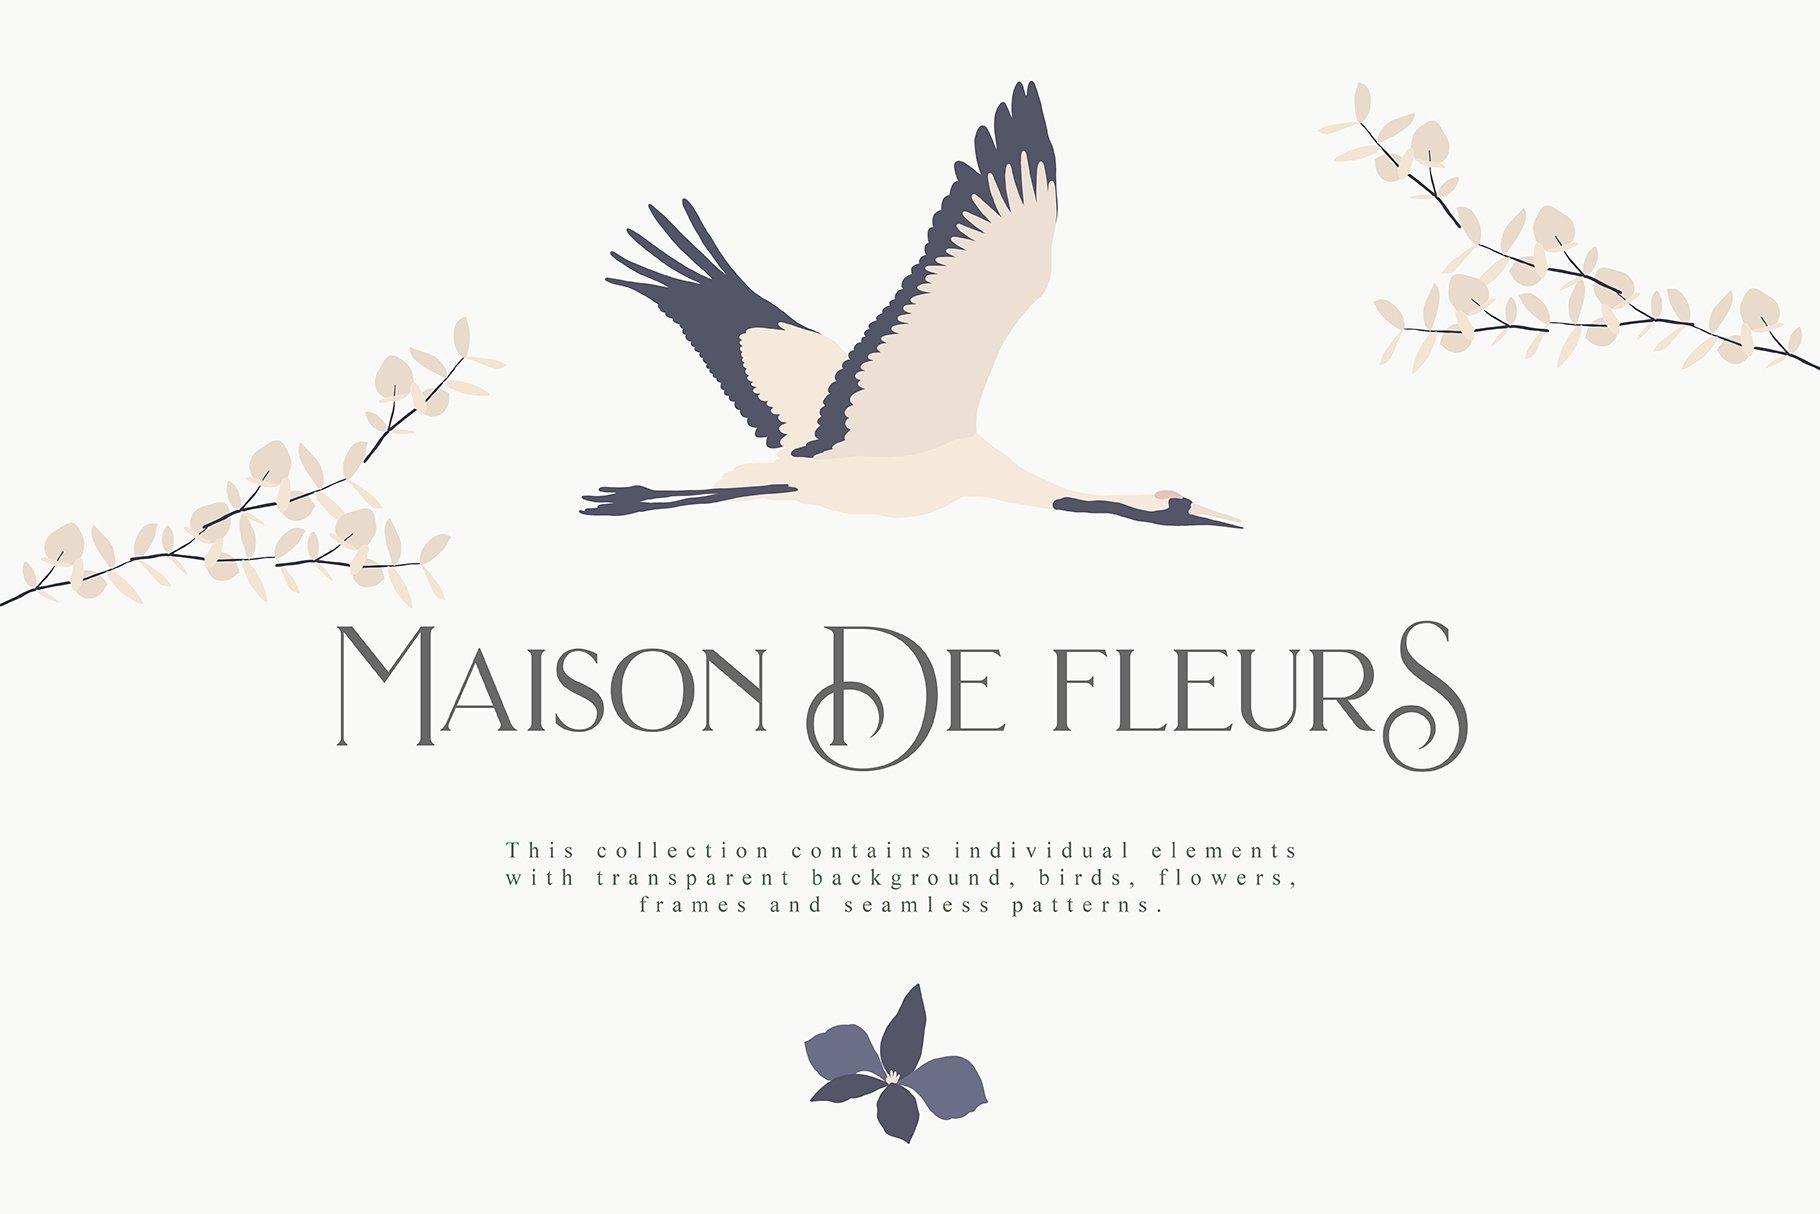 maison_de_fleurs-first-image-